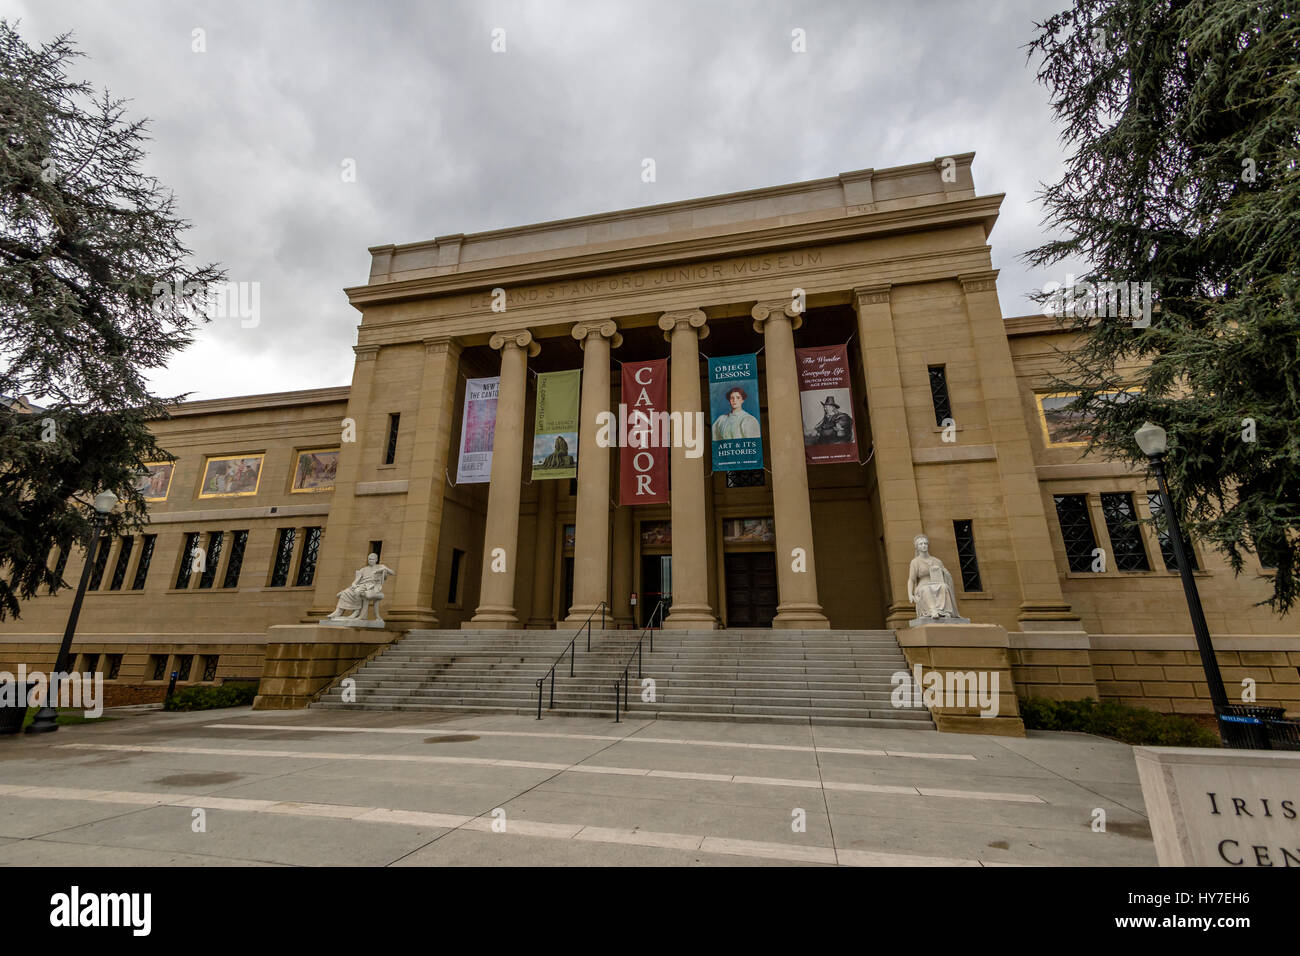 Cantor Center for Visual Arts Museum presso la Stanford University Campus - Palo Alto, California, Stati Uniti d'America Foto Stock